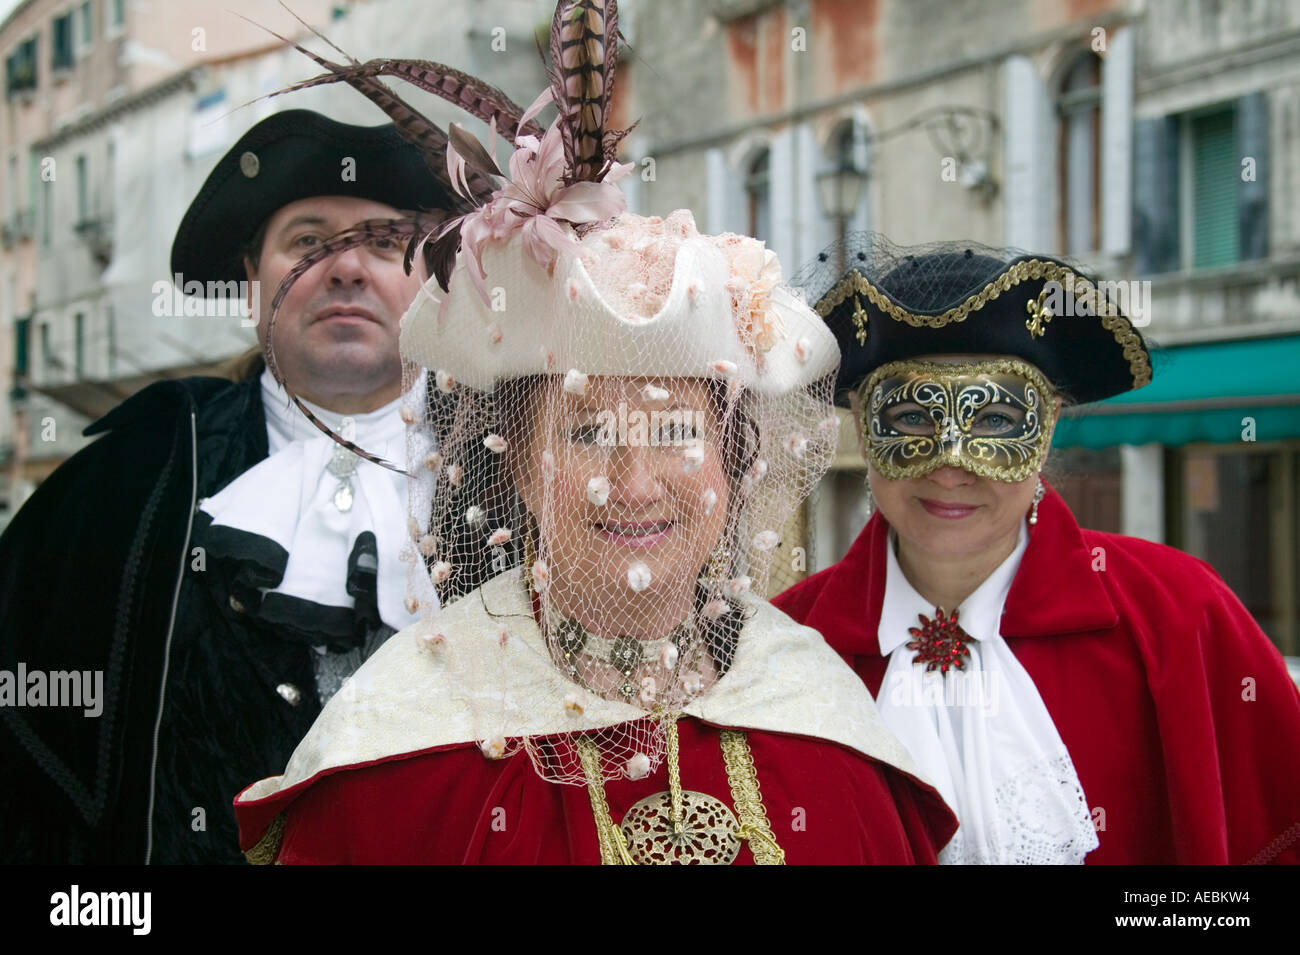 Tradizionali costumi veneziani al Carnevale di Venezia, Veneto, Italia Foto  stock - Alamy